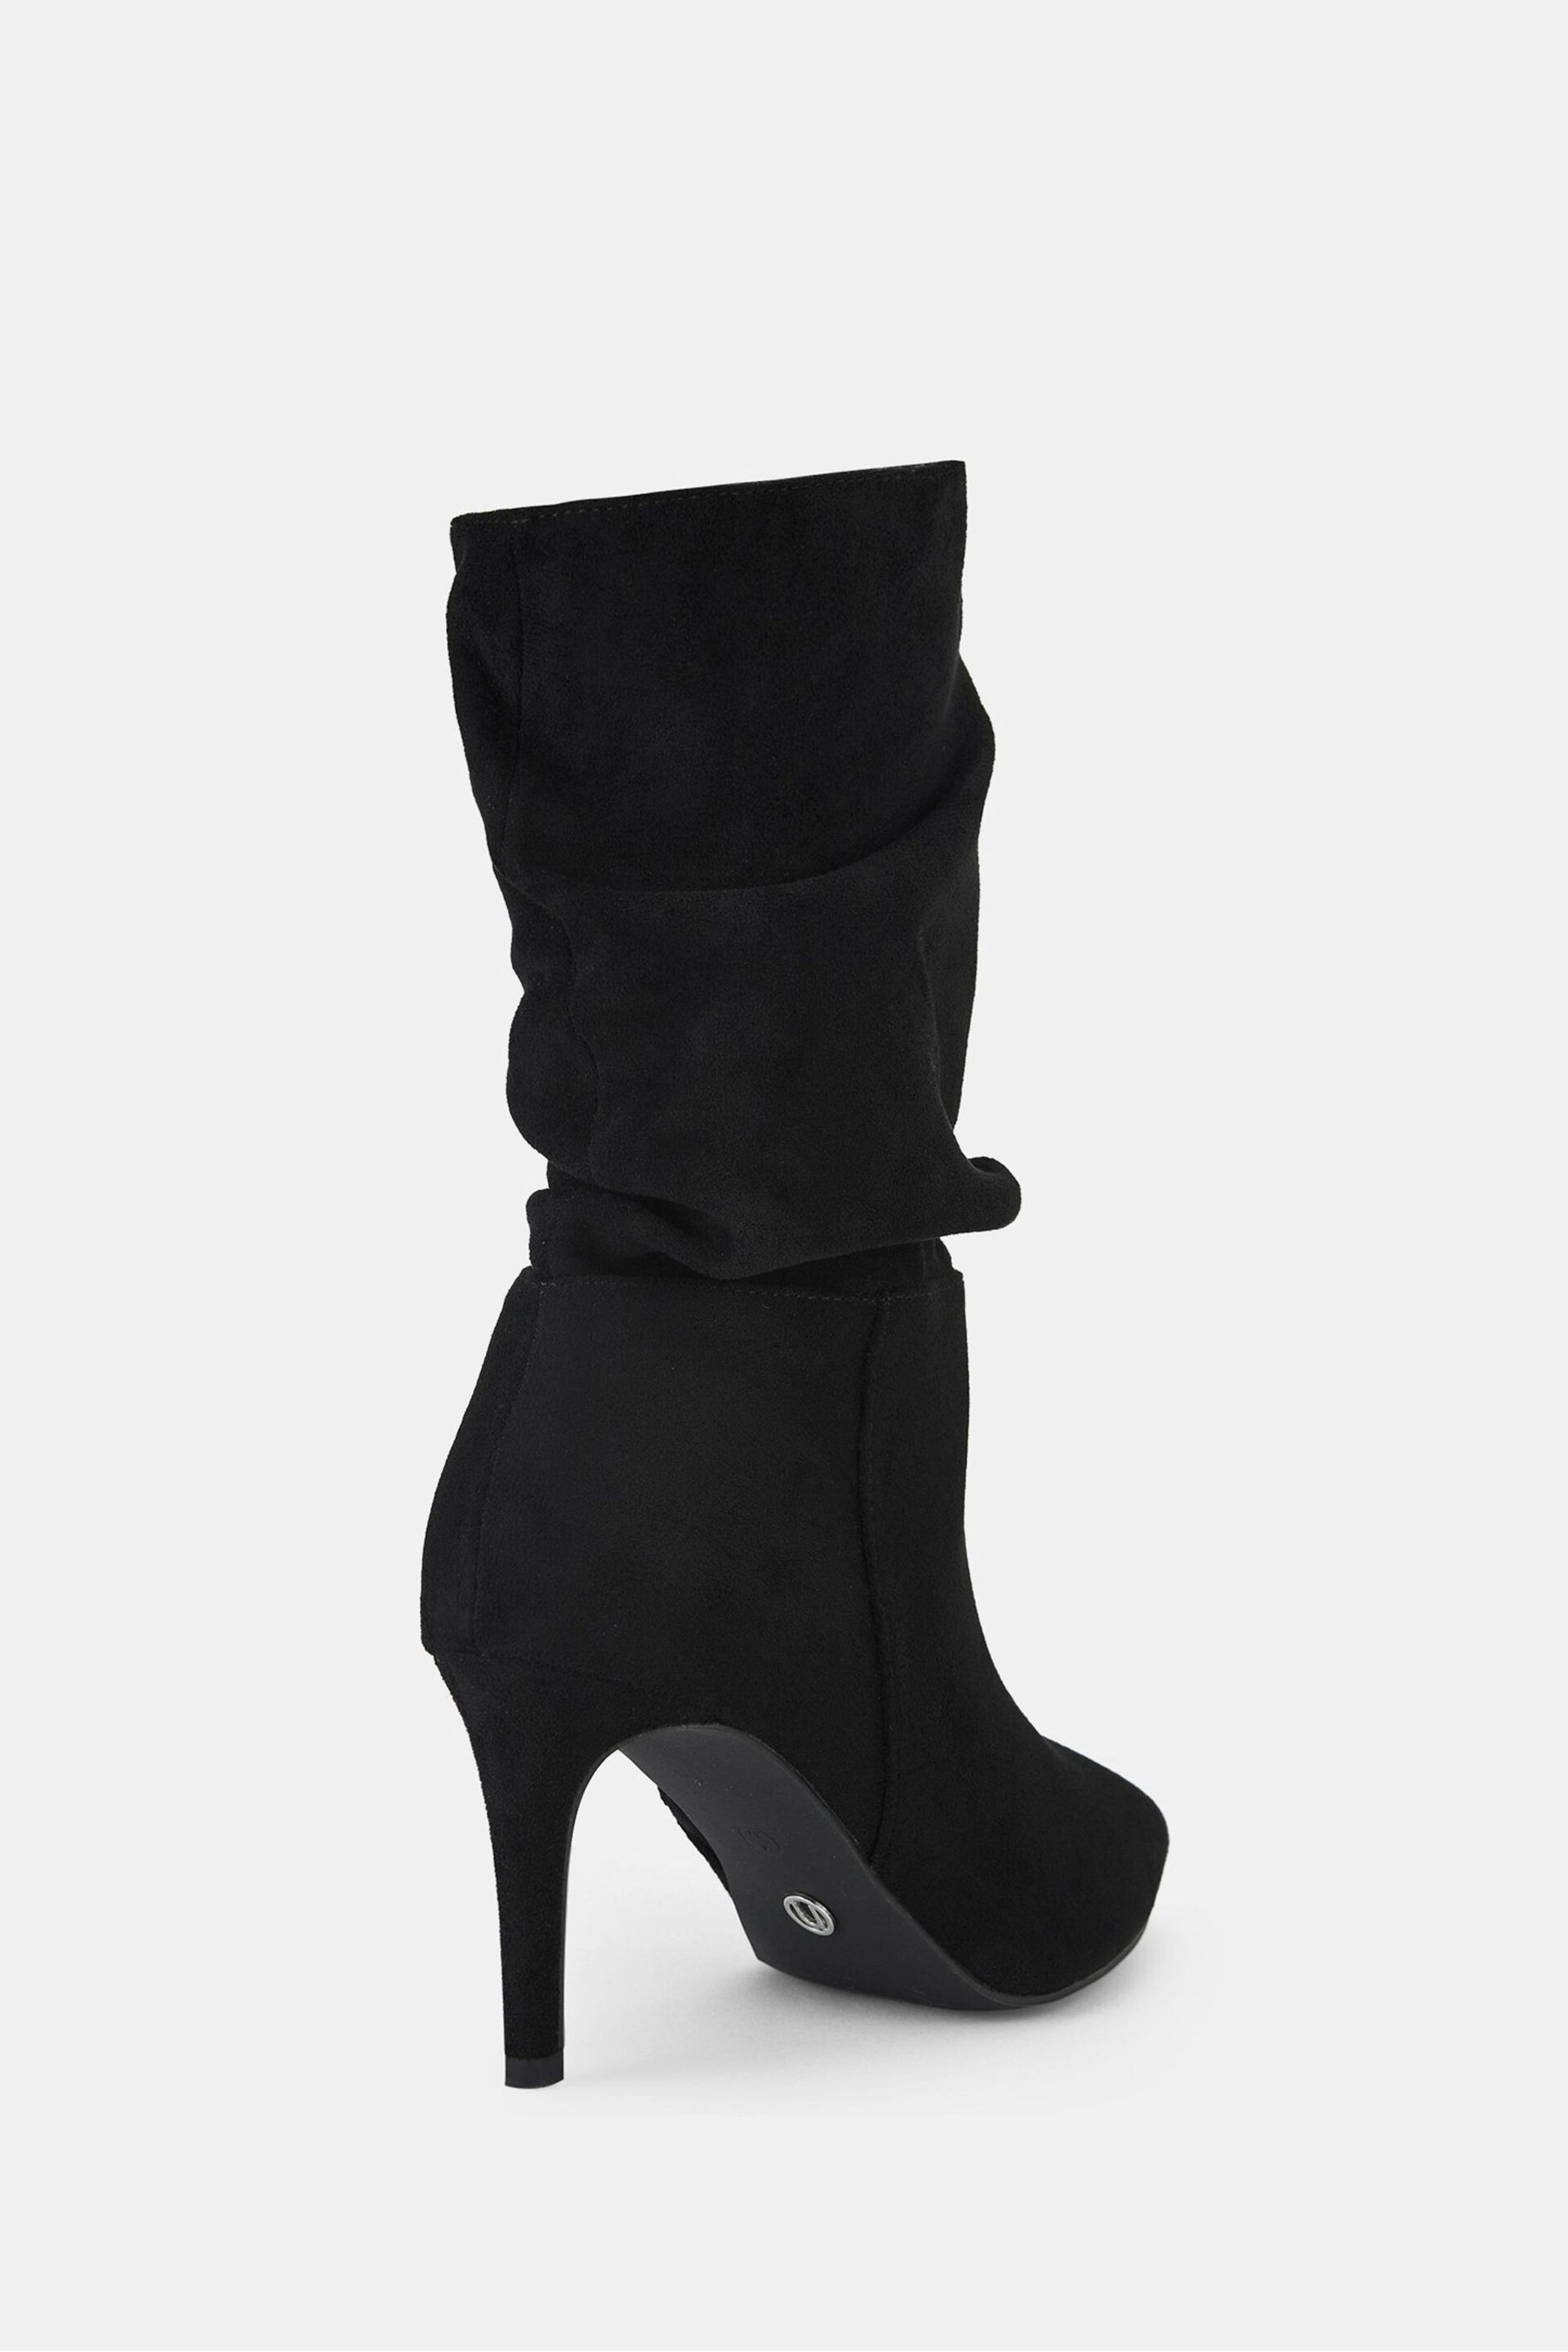 Novo Black Regular Fit Dekota Mid Heel Point Ruched Ankle Boots - Image 4 of 4